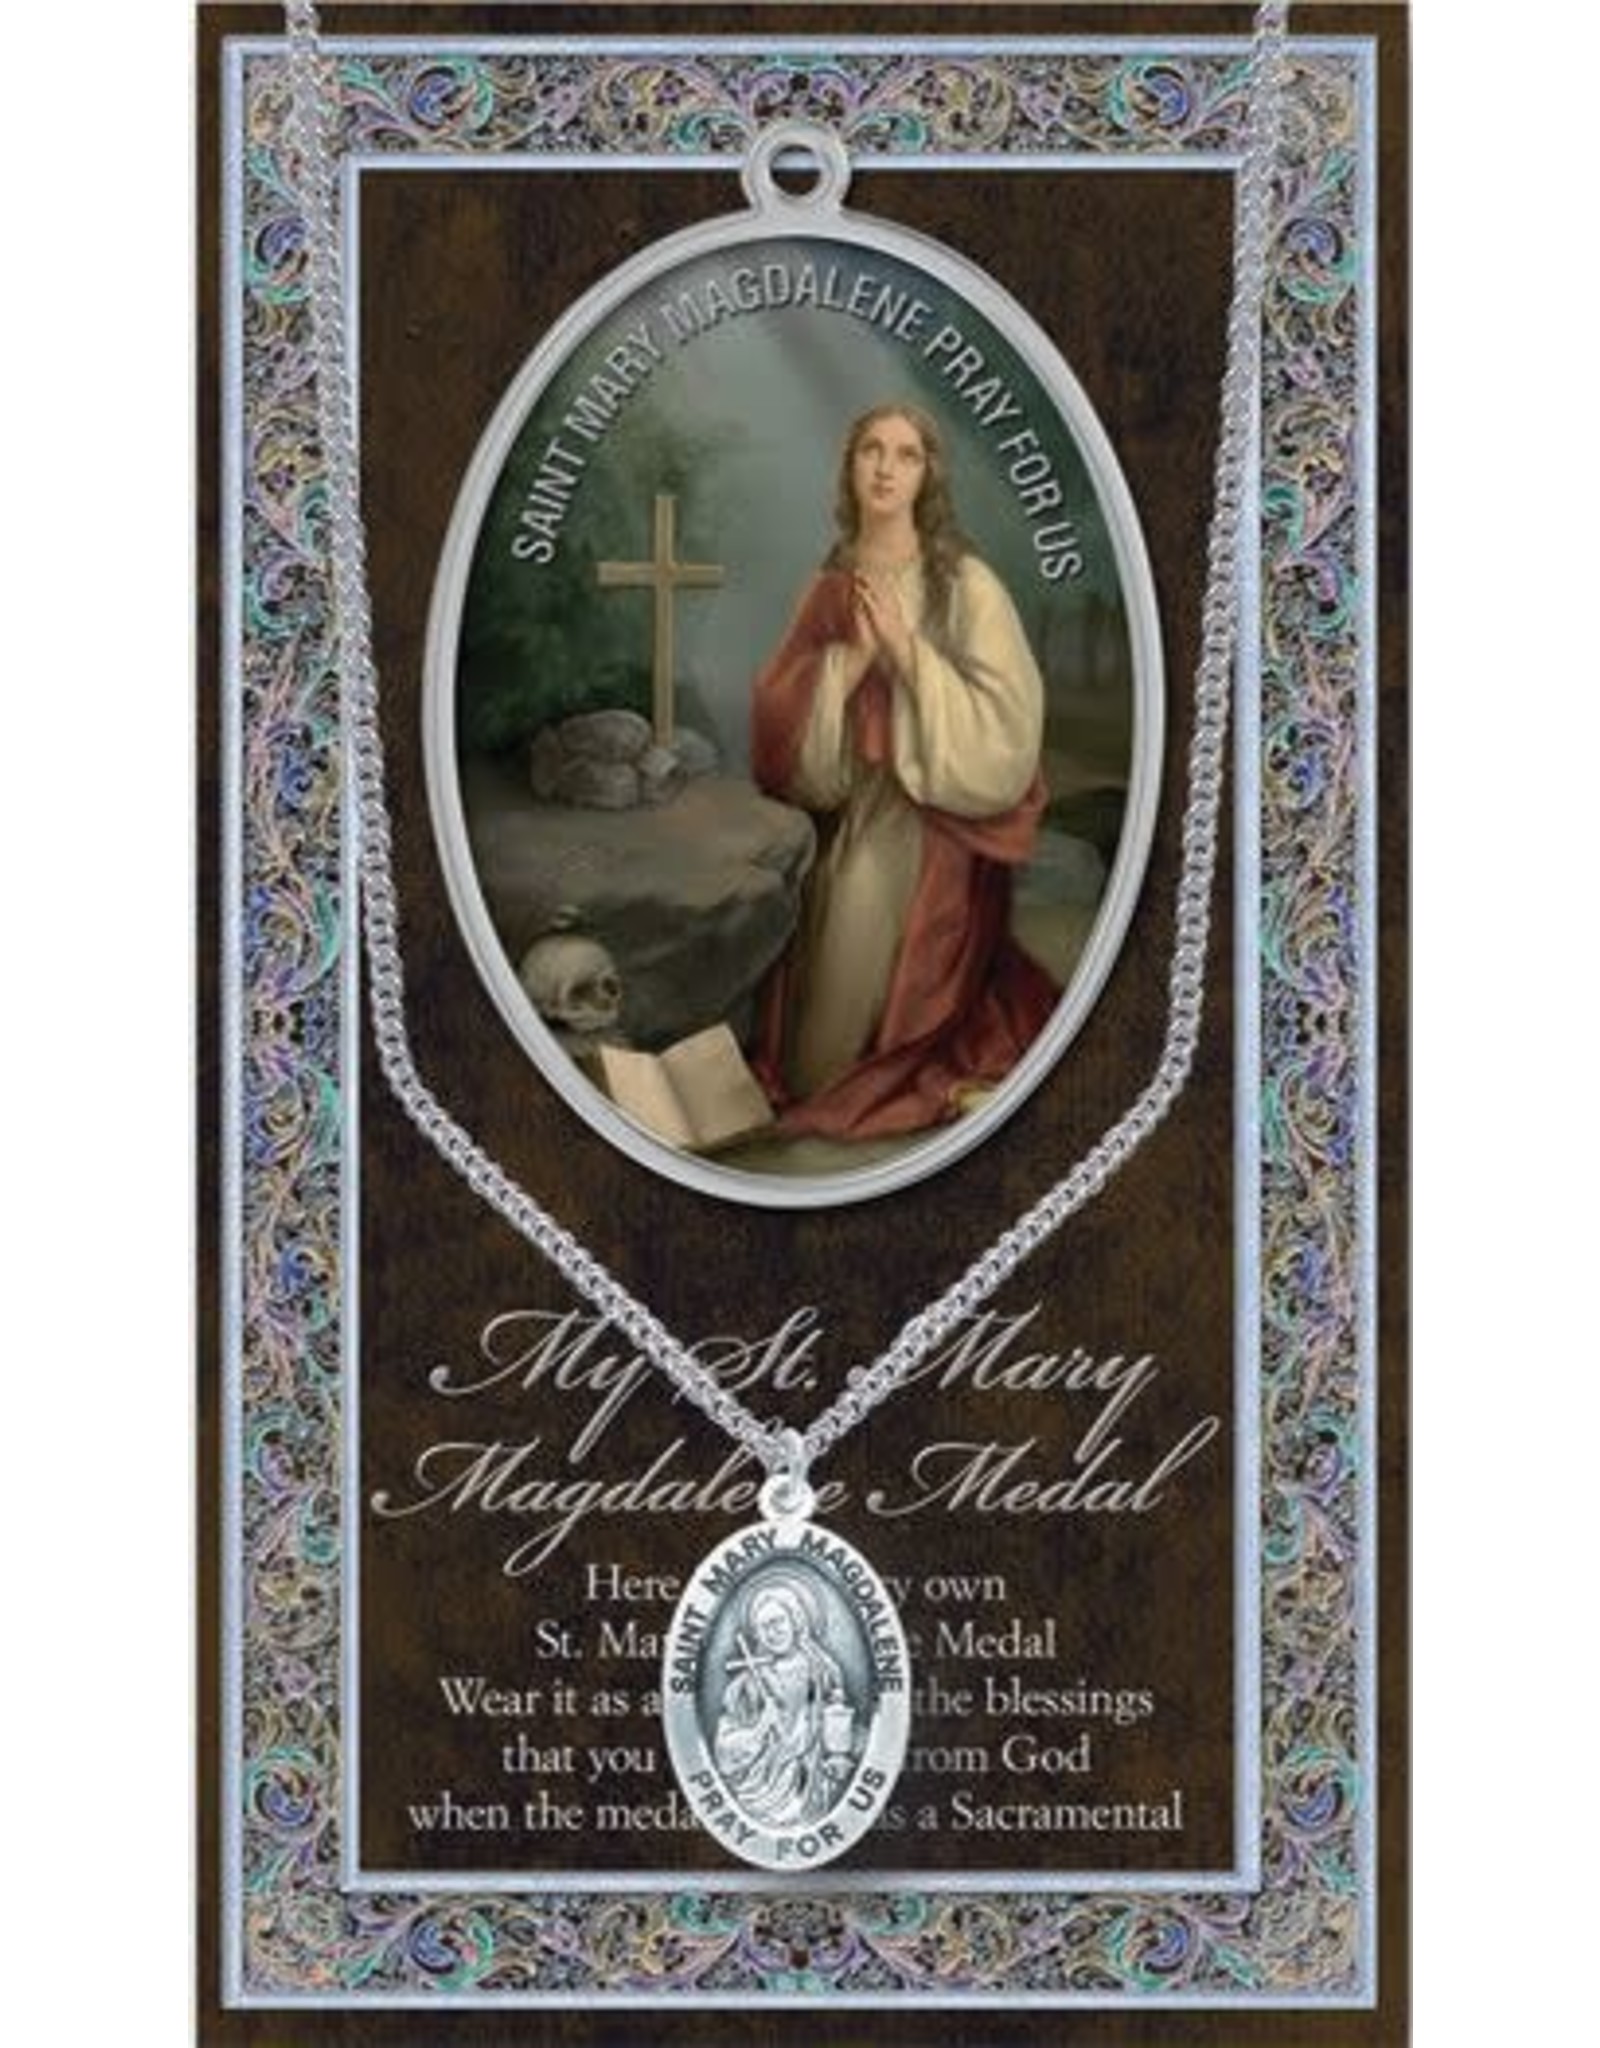 Hirten Saint Medal with Prayer Card - St. Mary Magdalene